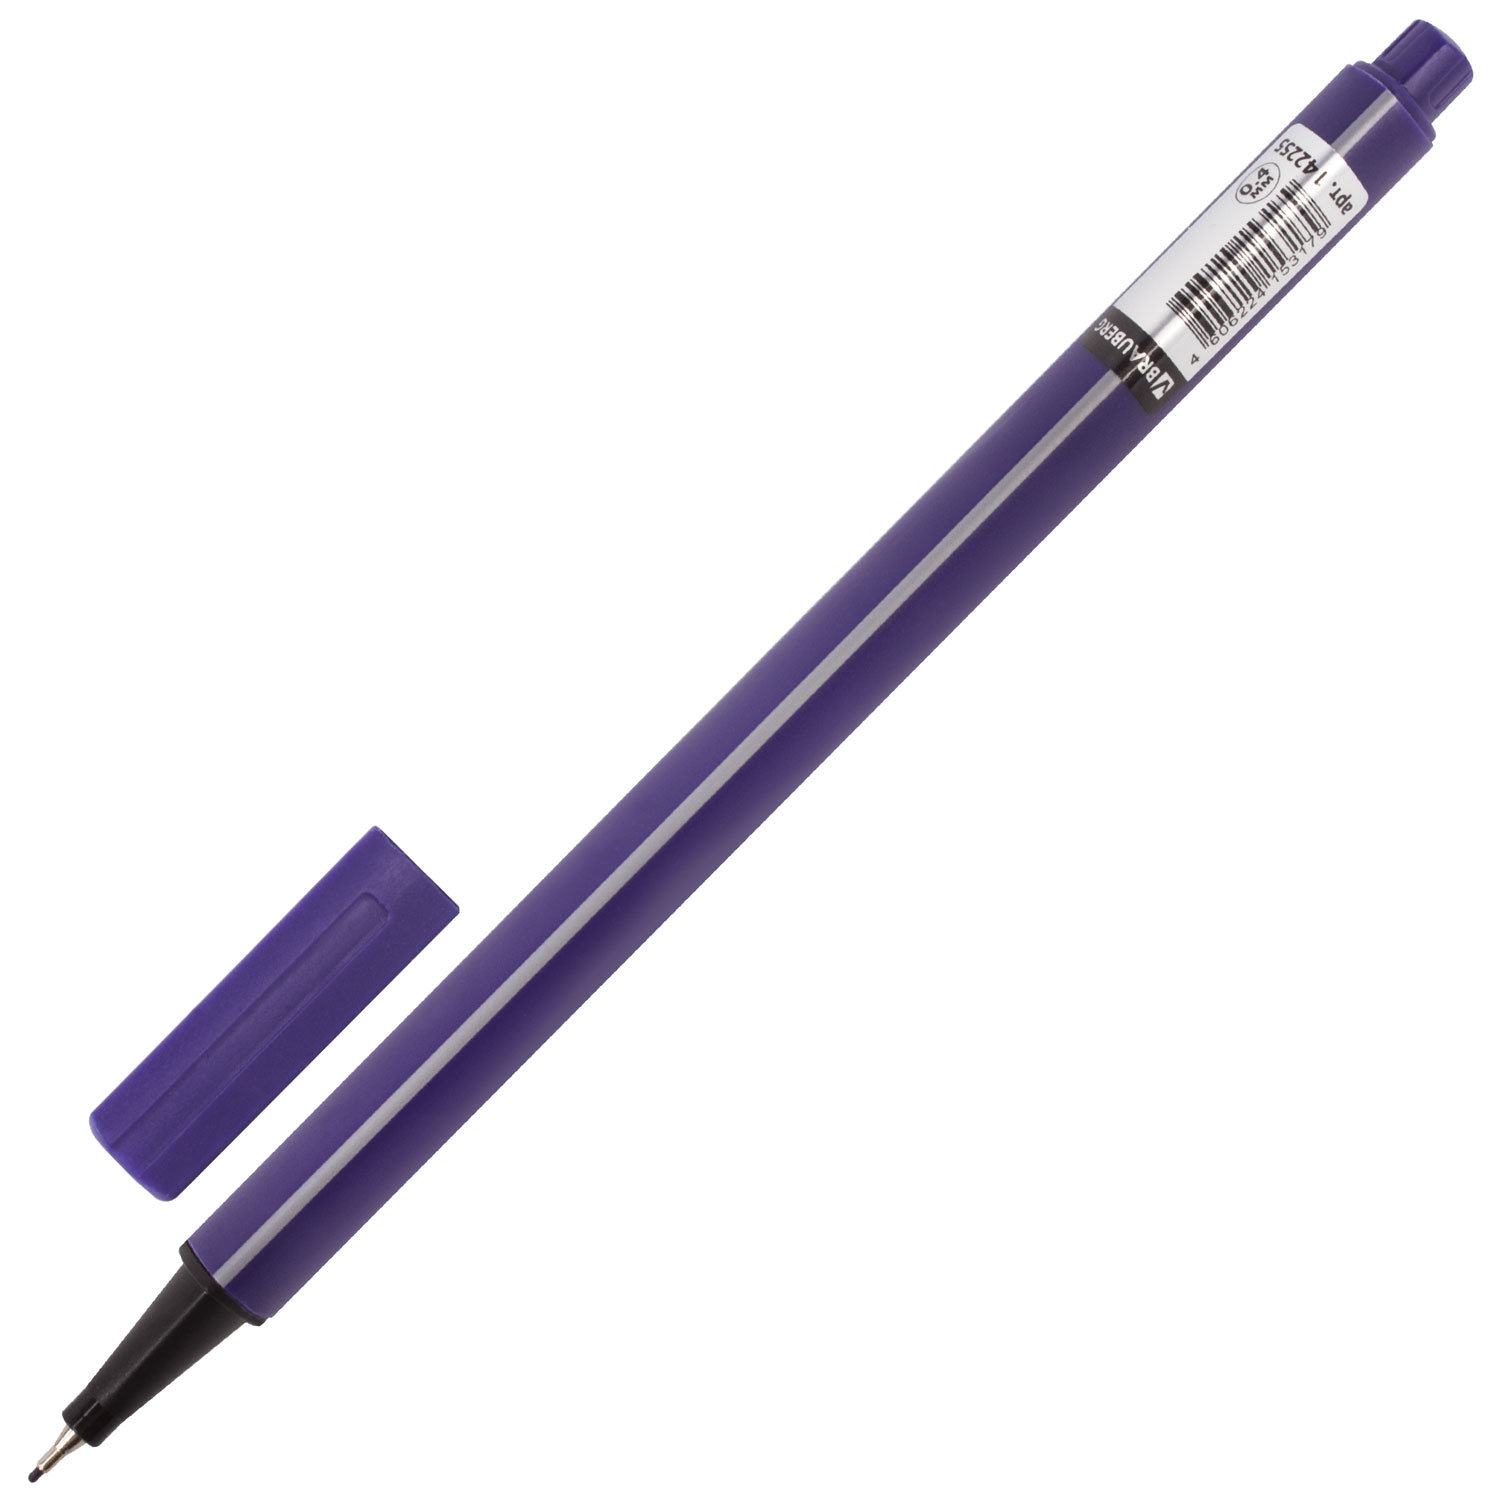 Ручка капиллярная "Aero", 0,4 мм,металлический наконечник, трехгранная, BRAUBERG, фиолетовая, 142255